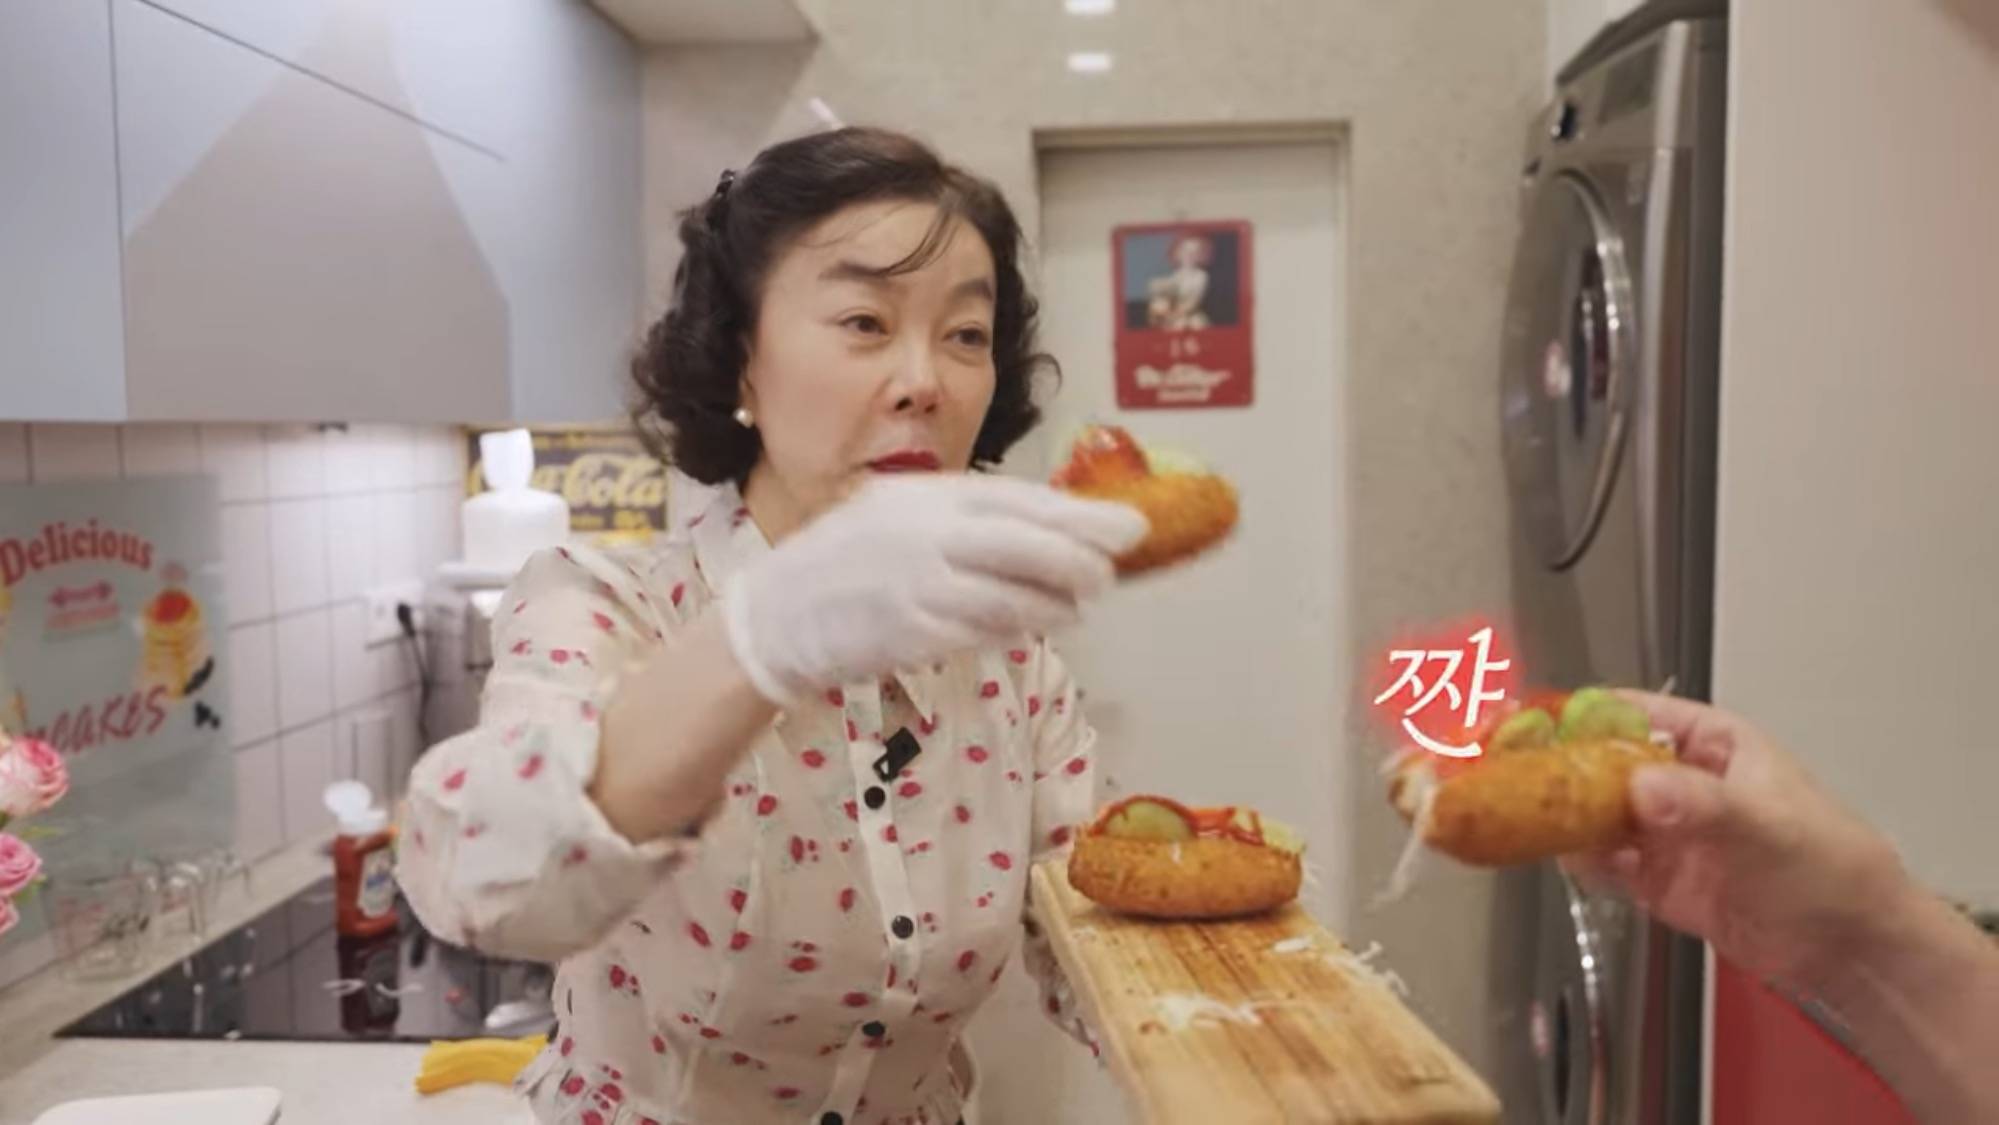 최화정의 냉동핫도그로 초간단 사라다빵 만들기 | 인스티즈